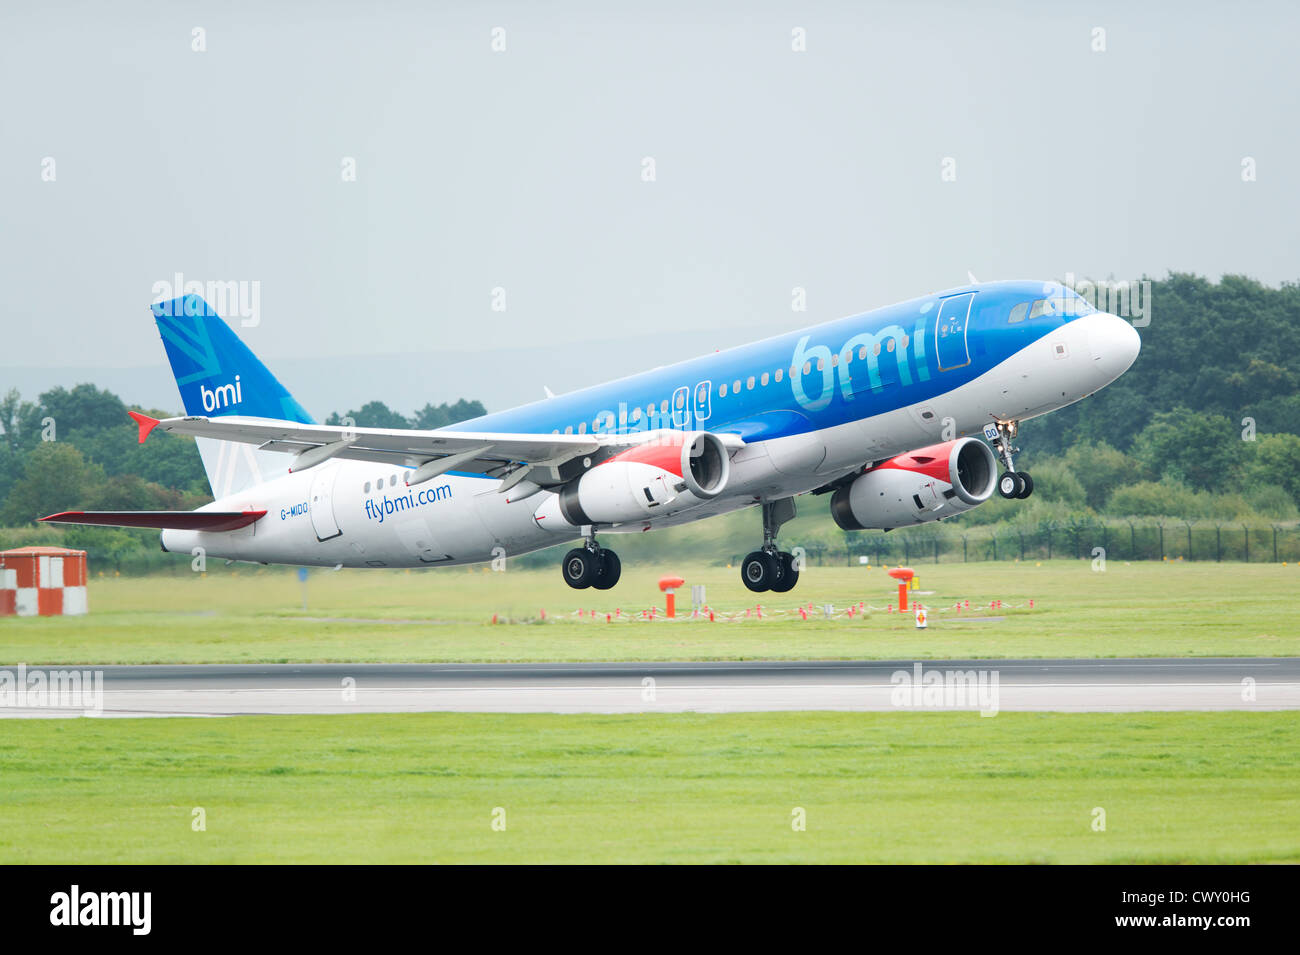 Un BMI (British Midland International) Airbus A321 décollant de l'Aéroport International de Manchester (usage éditorial uniquement) Banque D'Images